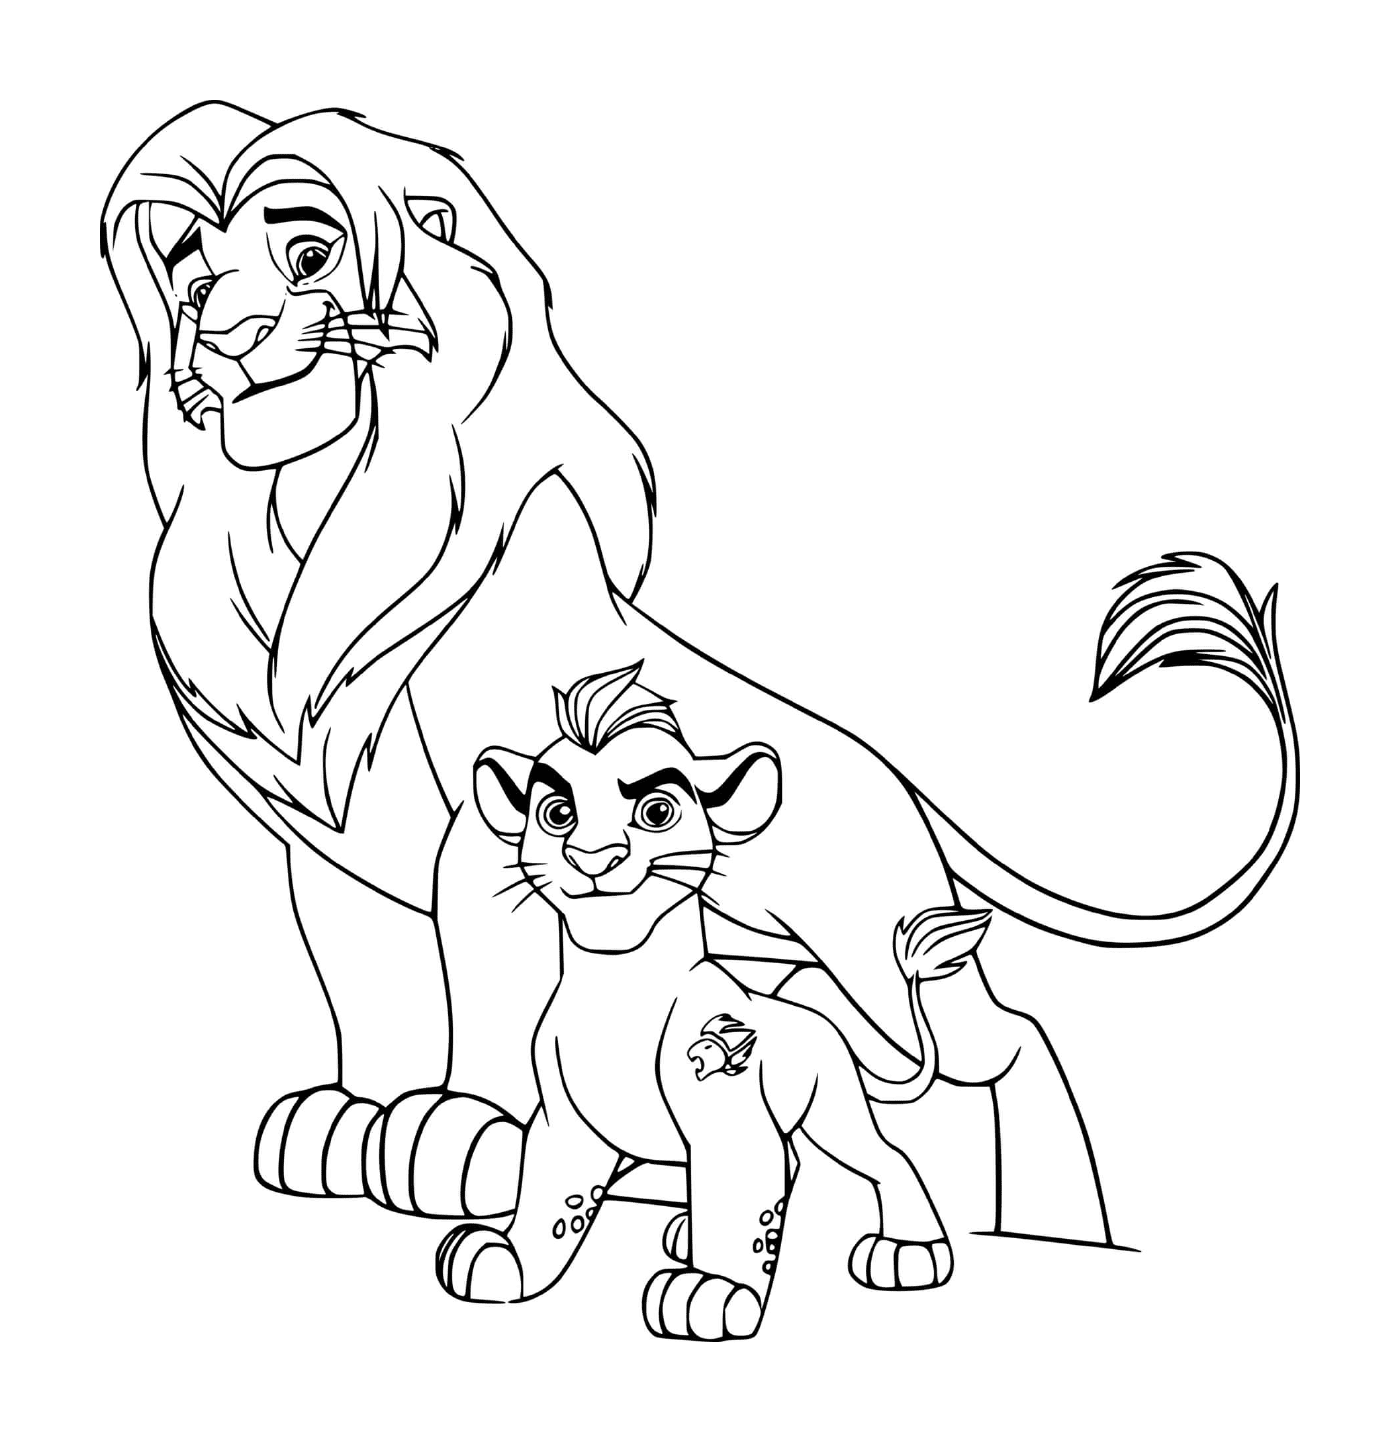  Simba und Kion, Vater und Sohn 